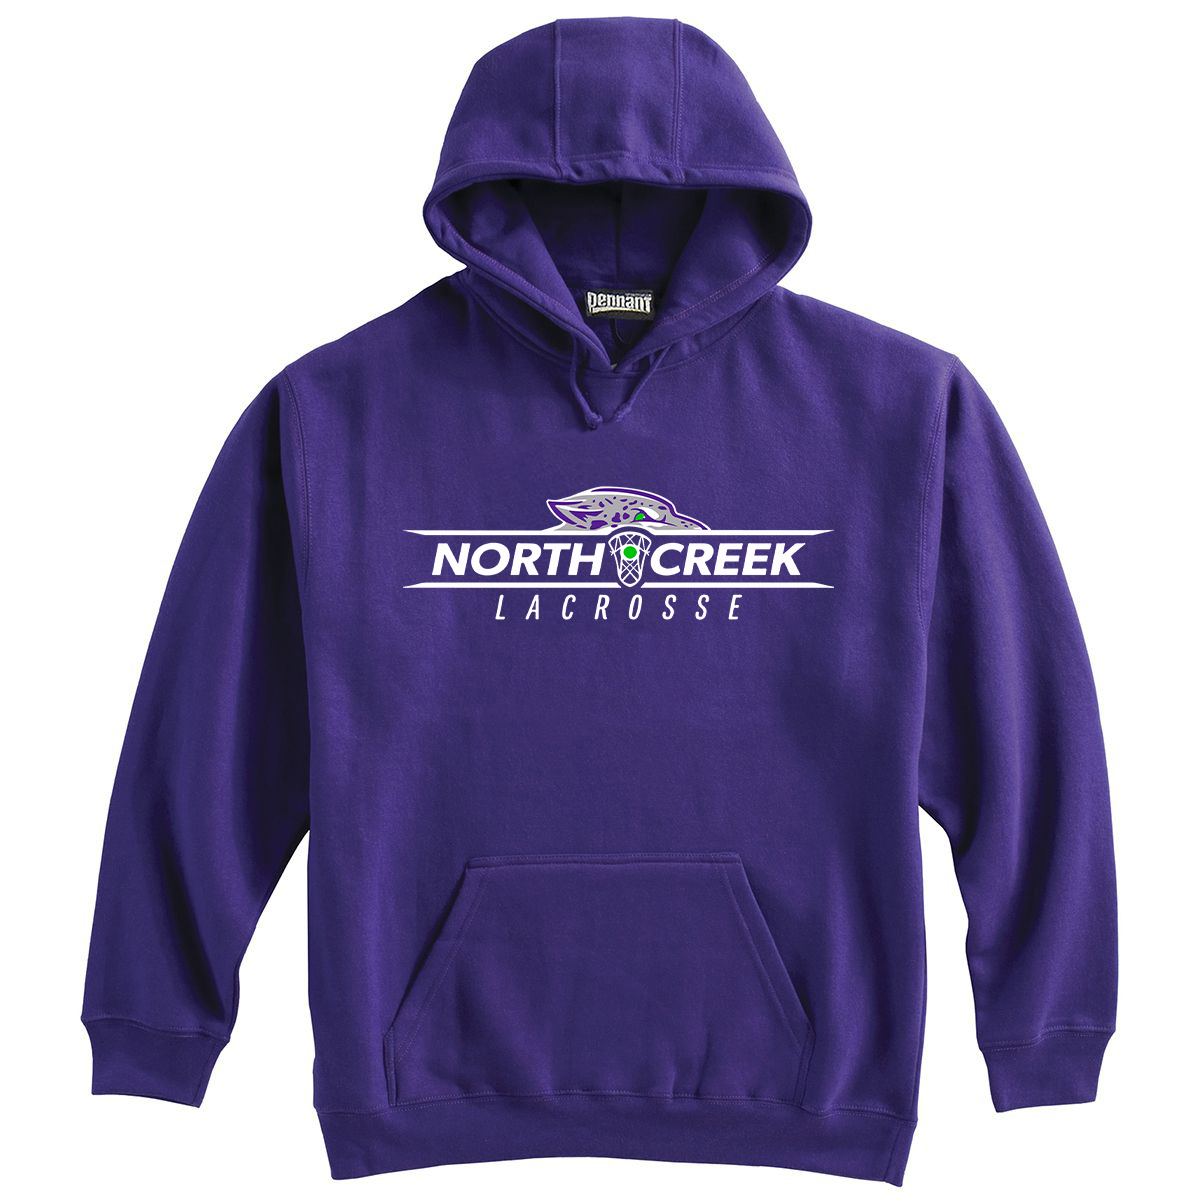 North Creek Lacrosse Sweatshirt